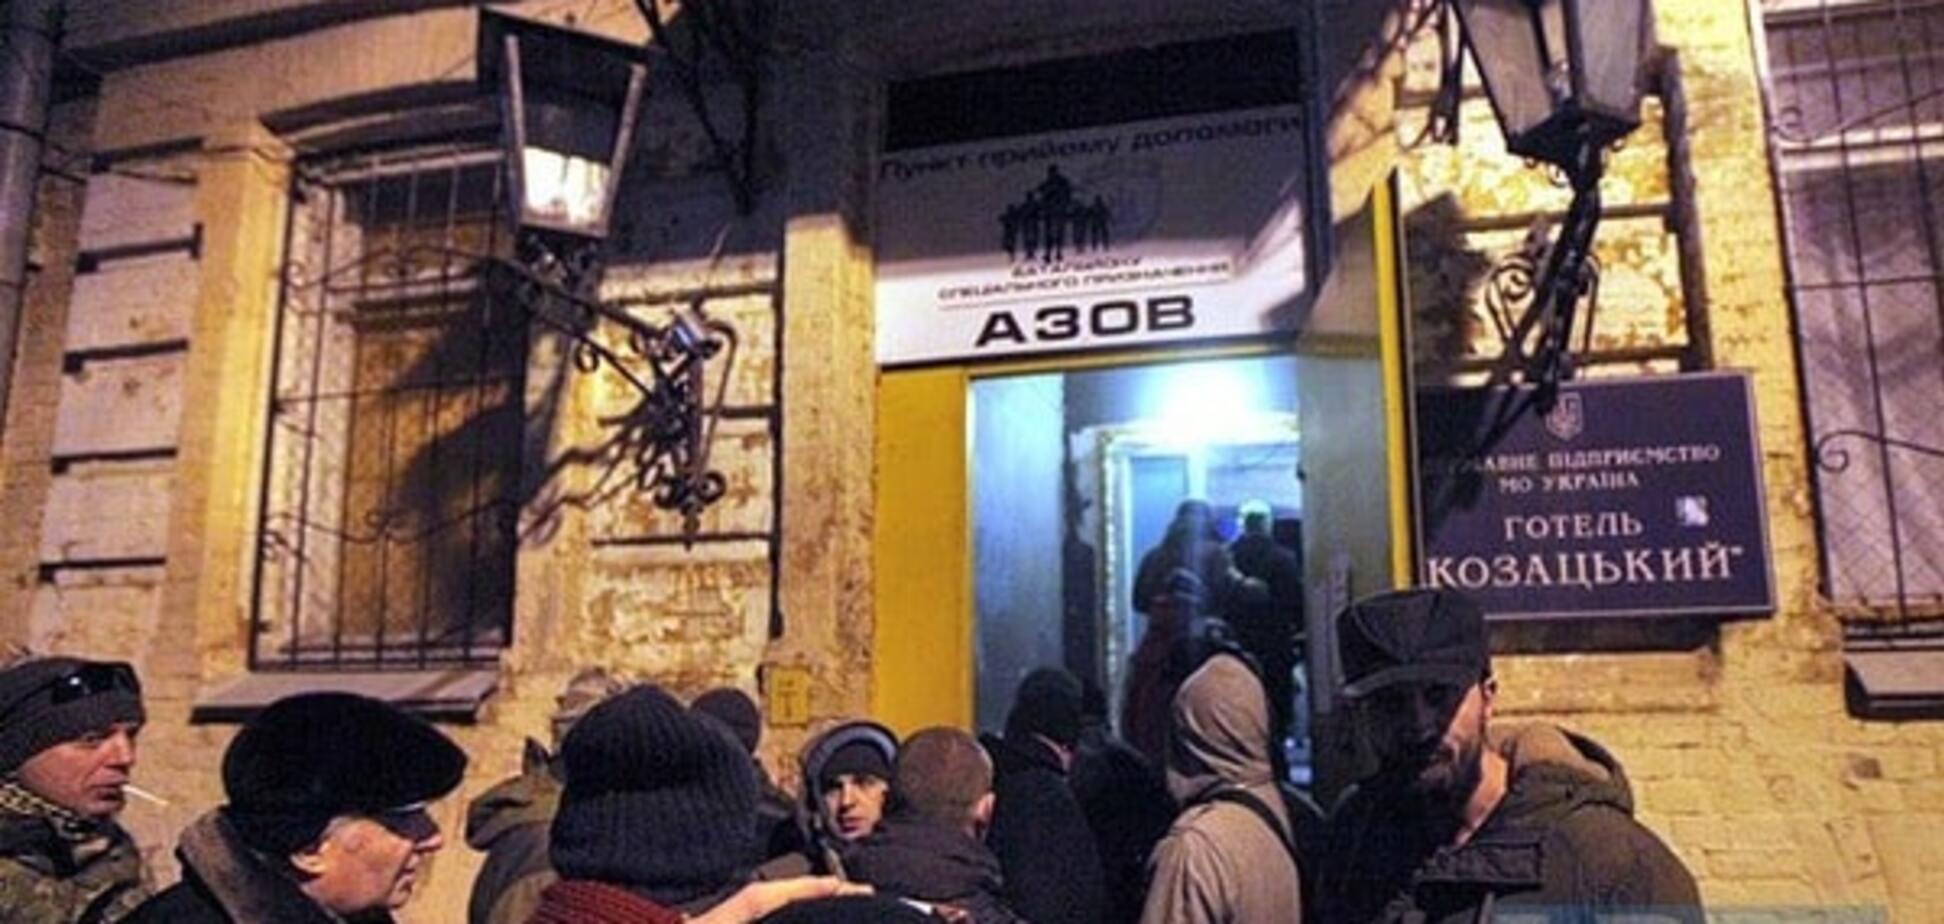 Активисты покинули отель 'Козацкий'